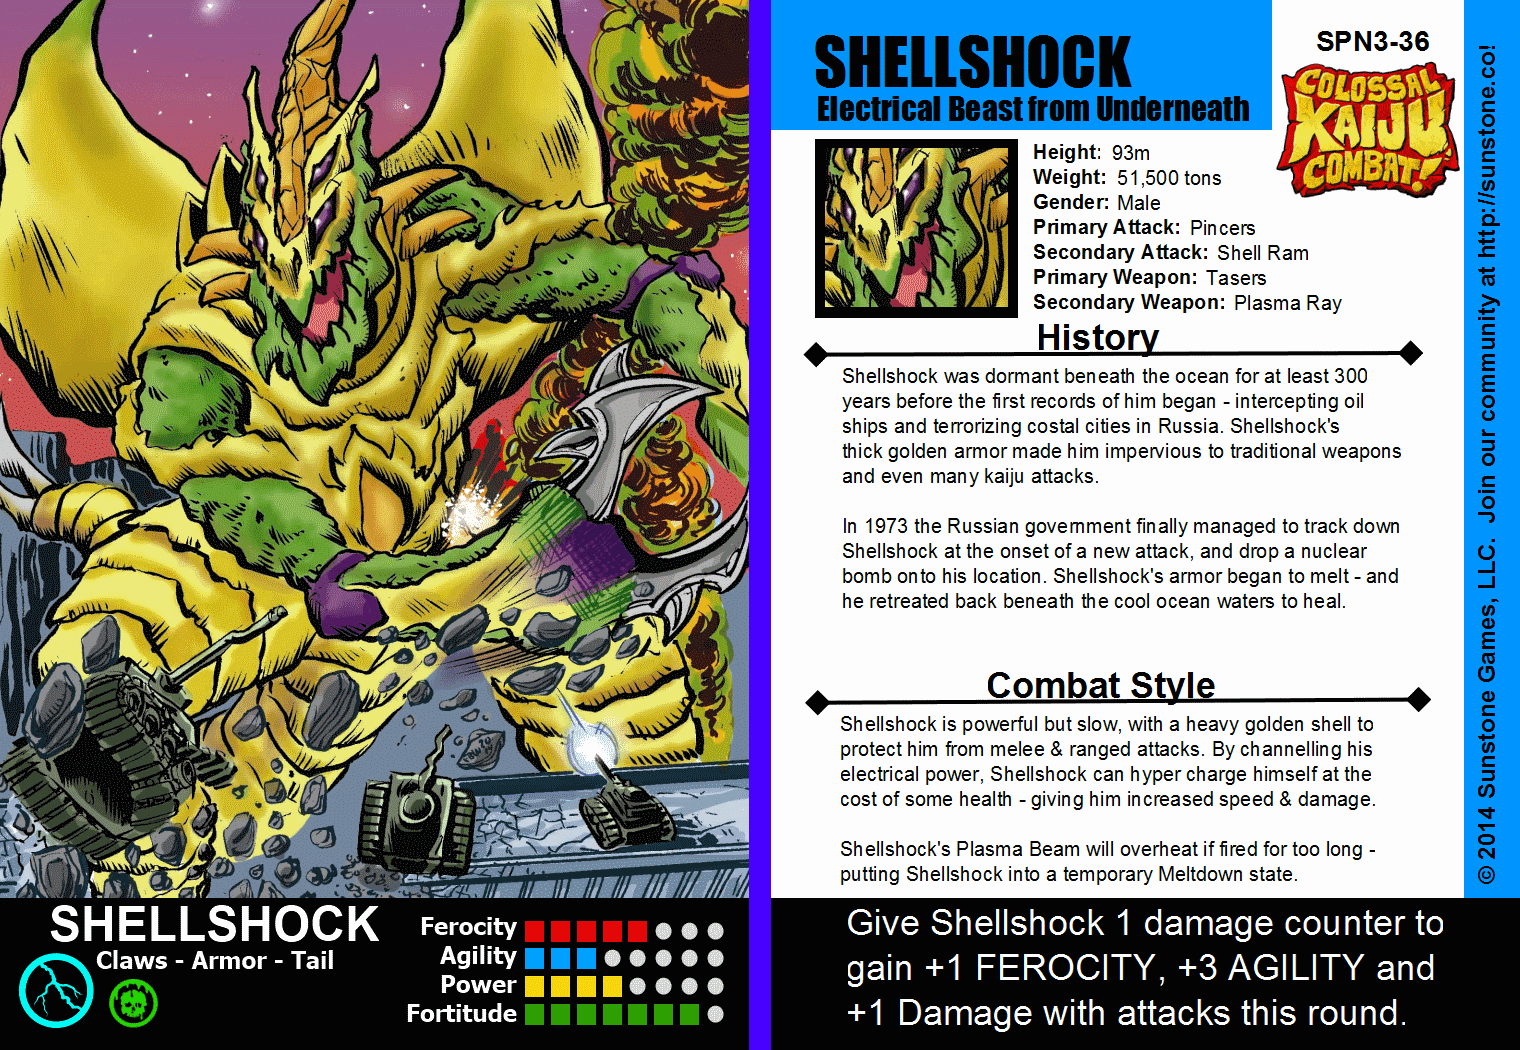 Shellshock, KaijuCombat Wiki